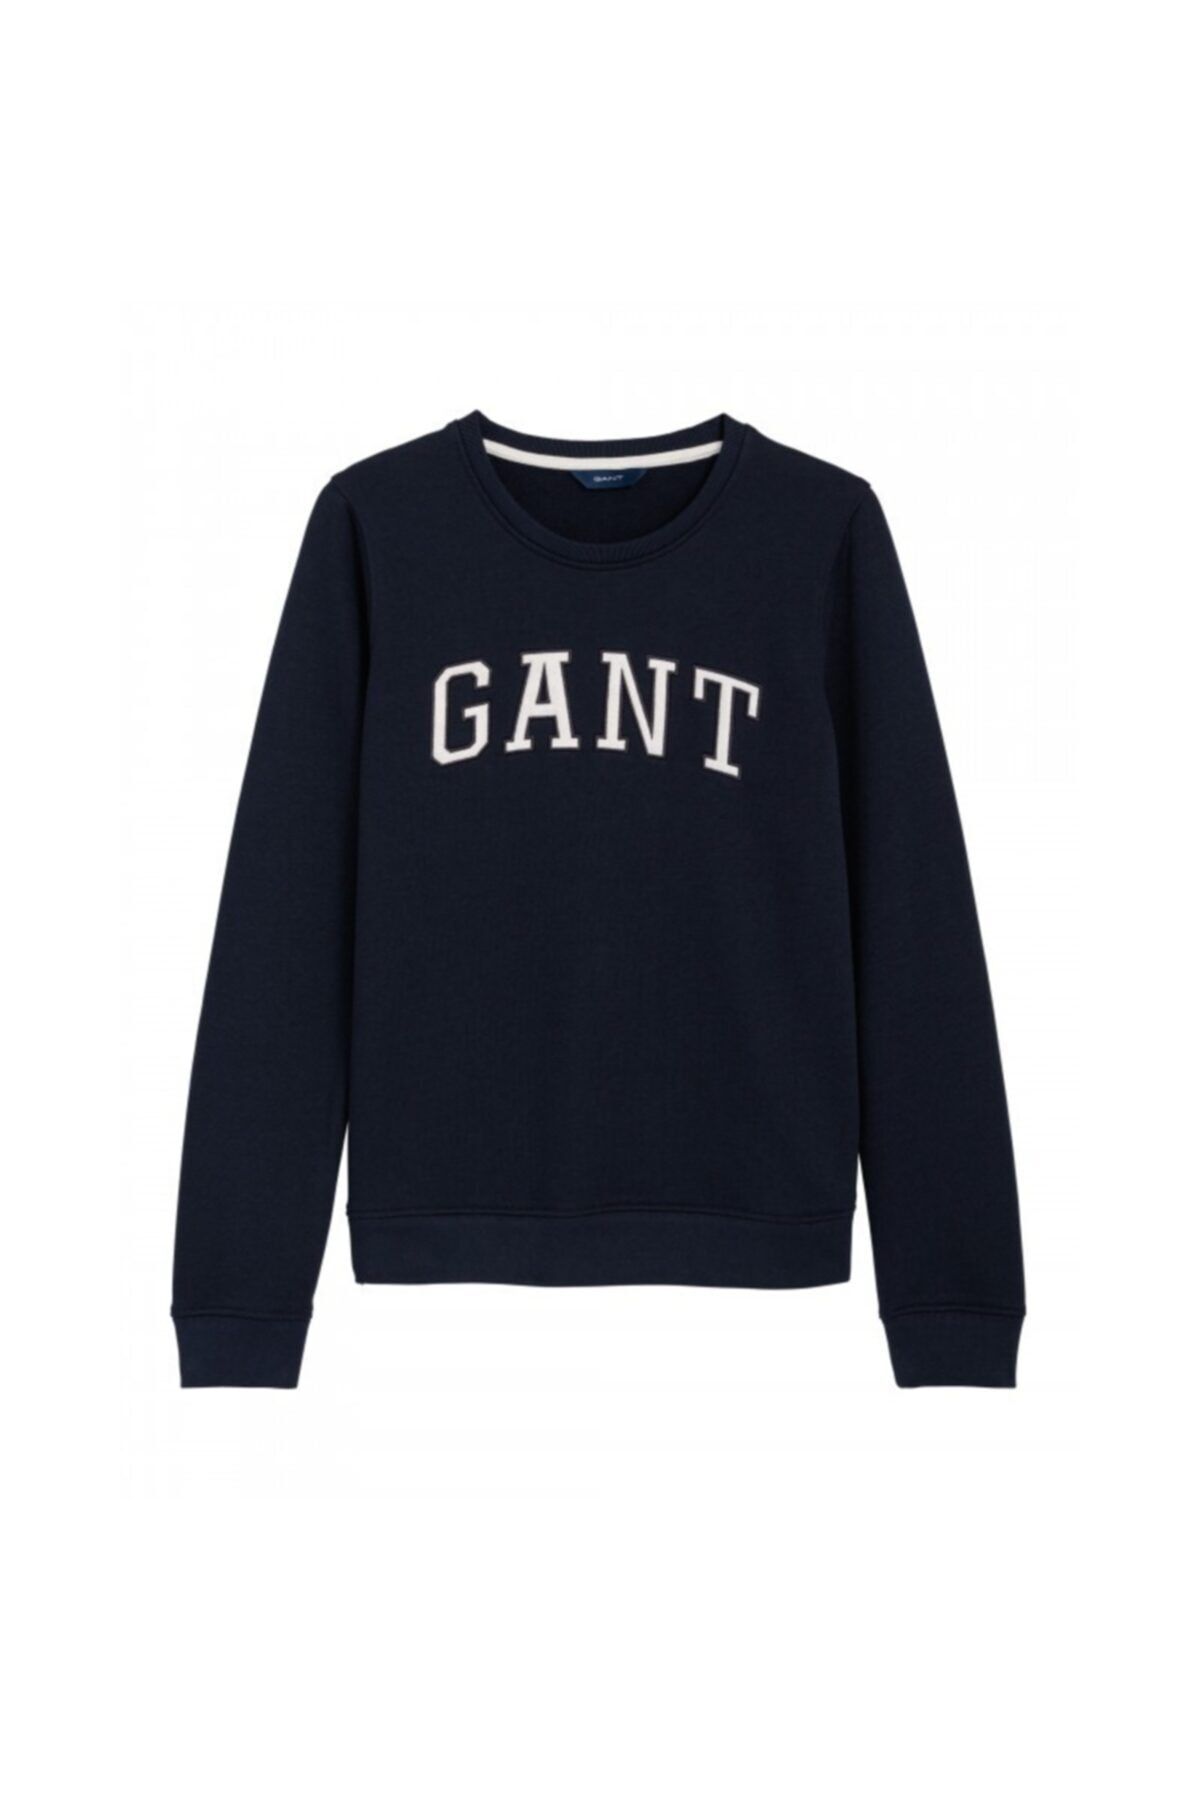 Gant Kadın Sweatshirt - Lacivert